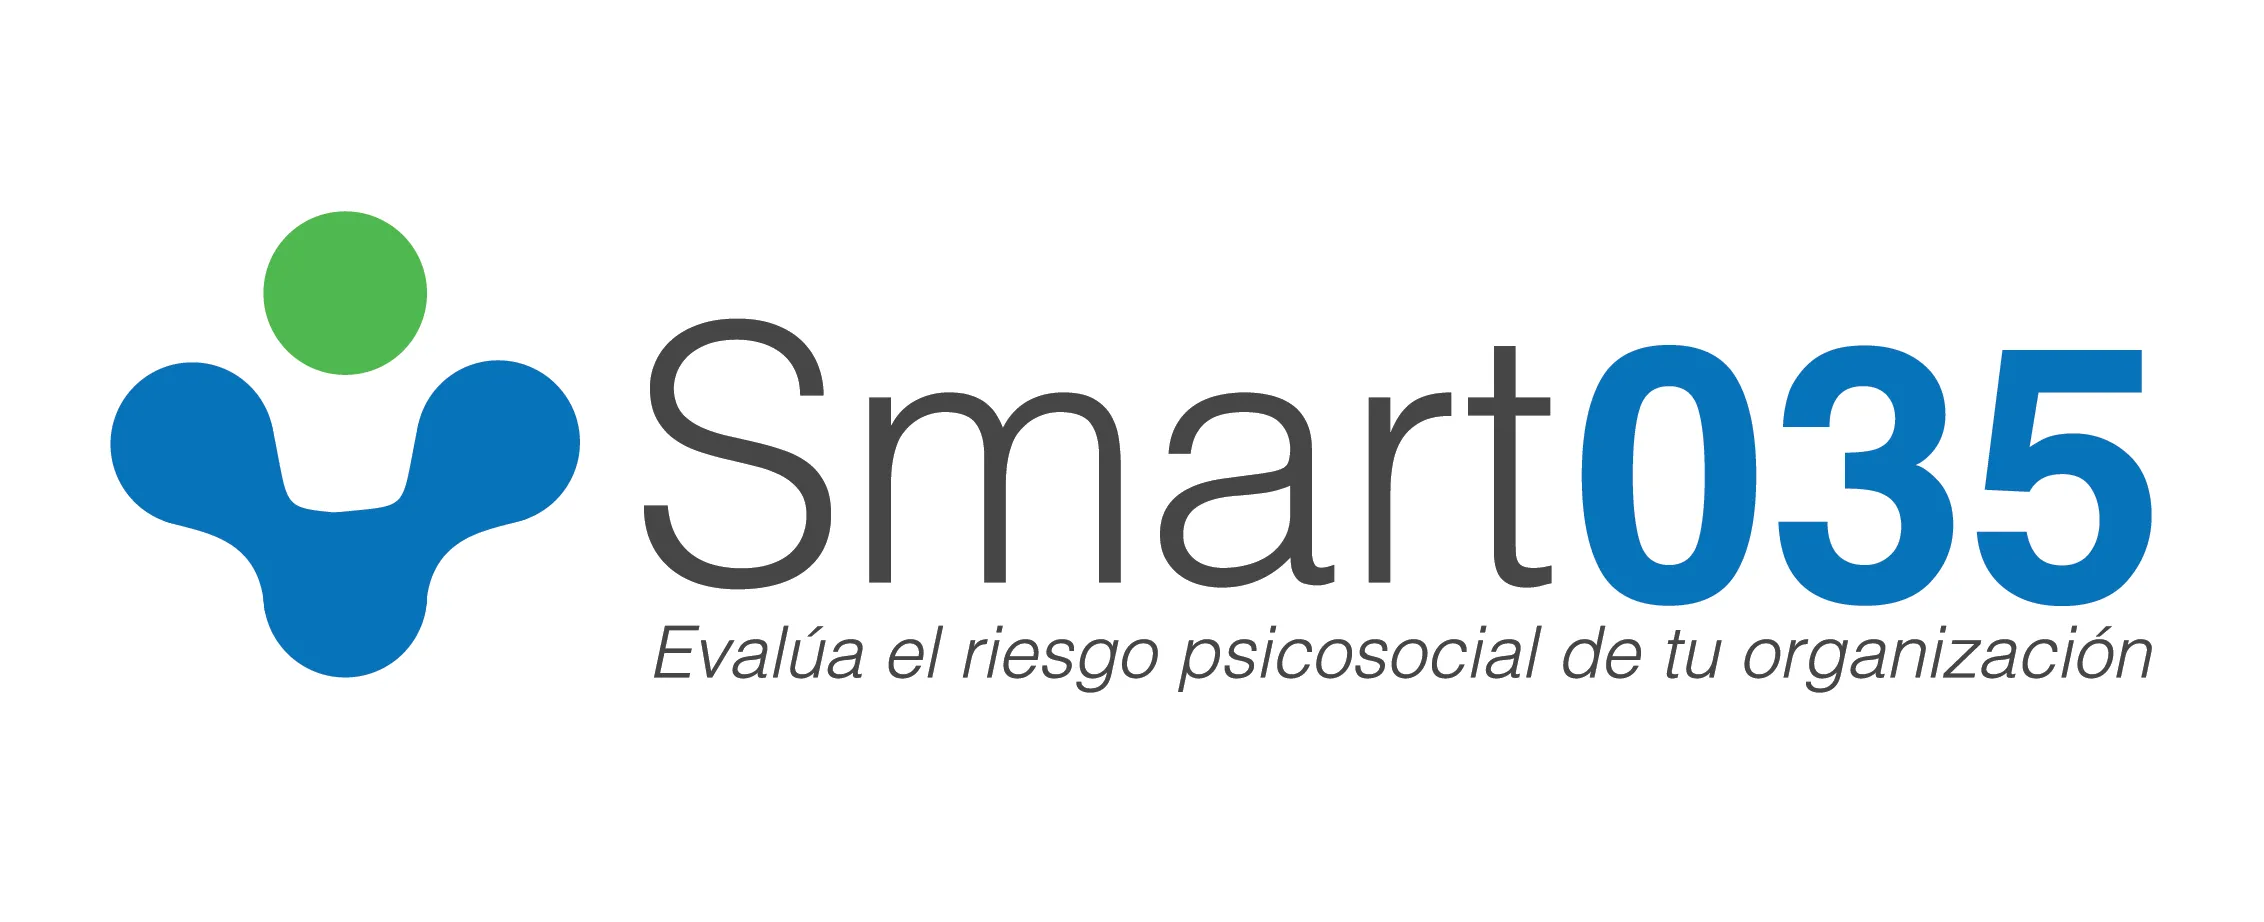 Logo de smart035, letras de la marca en gris